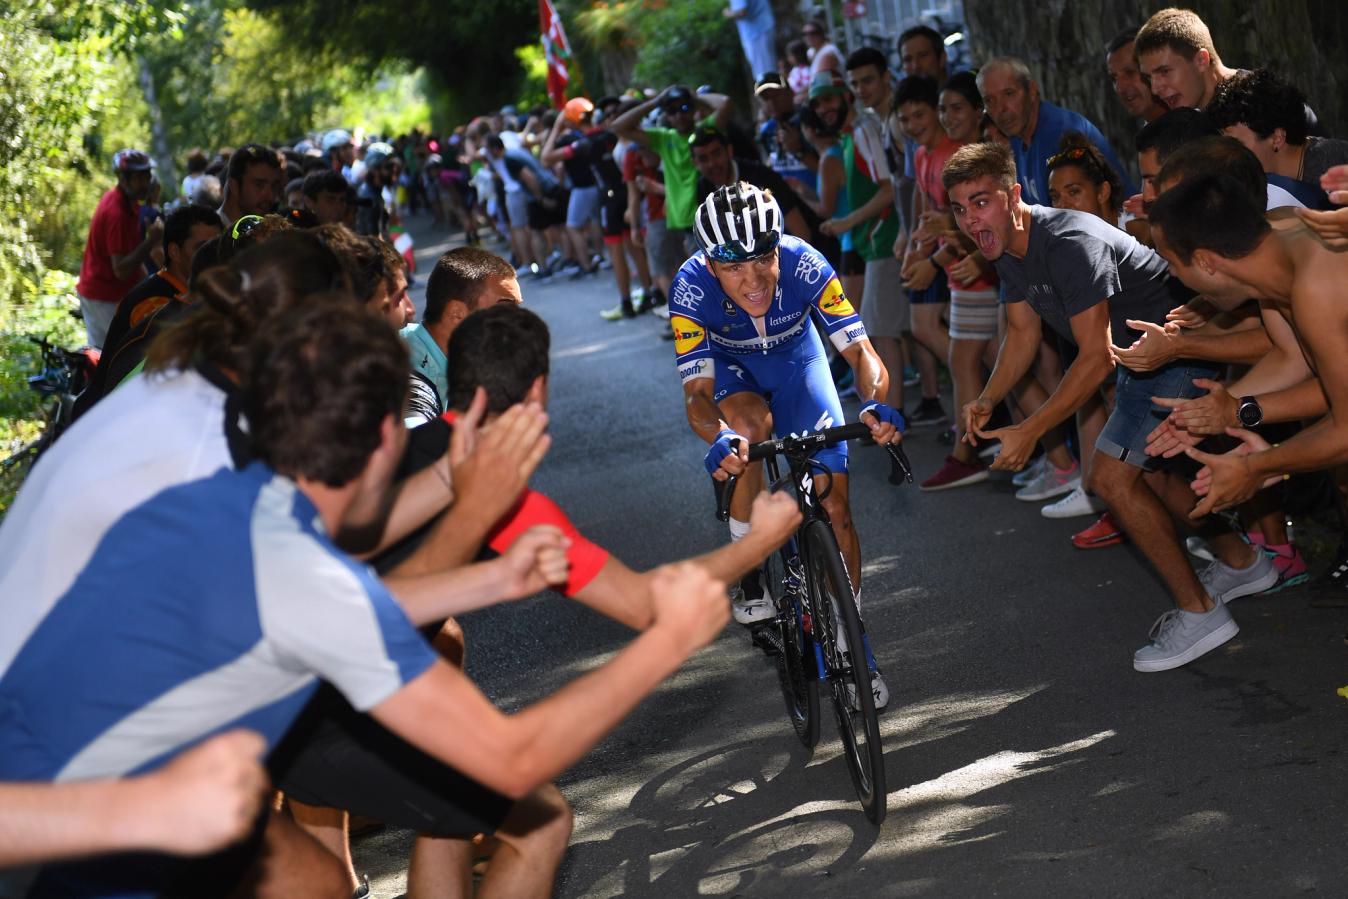 Remco Evenepoel made his name on short but steep climbs in the 2019 Clásica San Sebastián